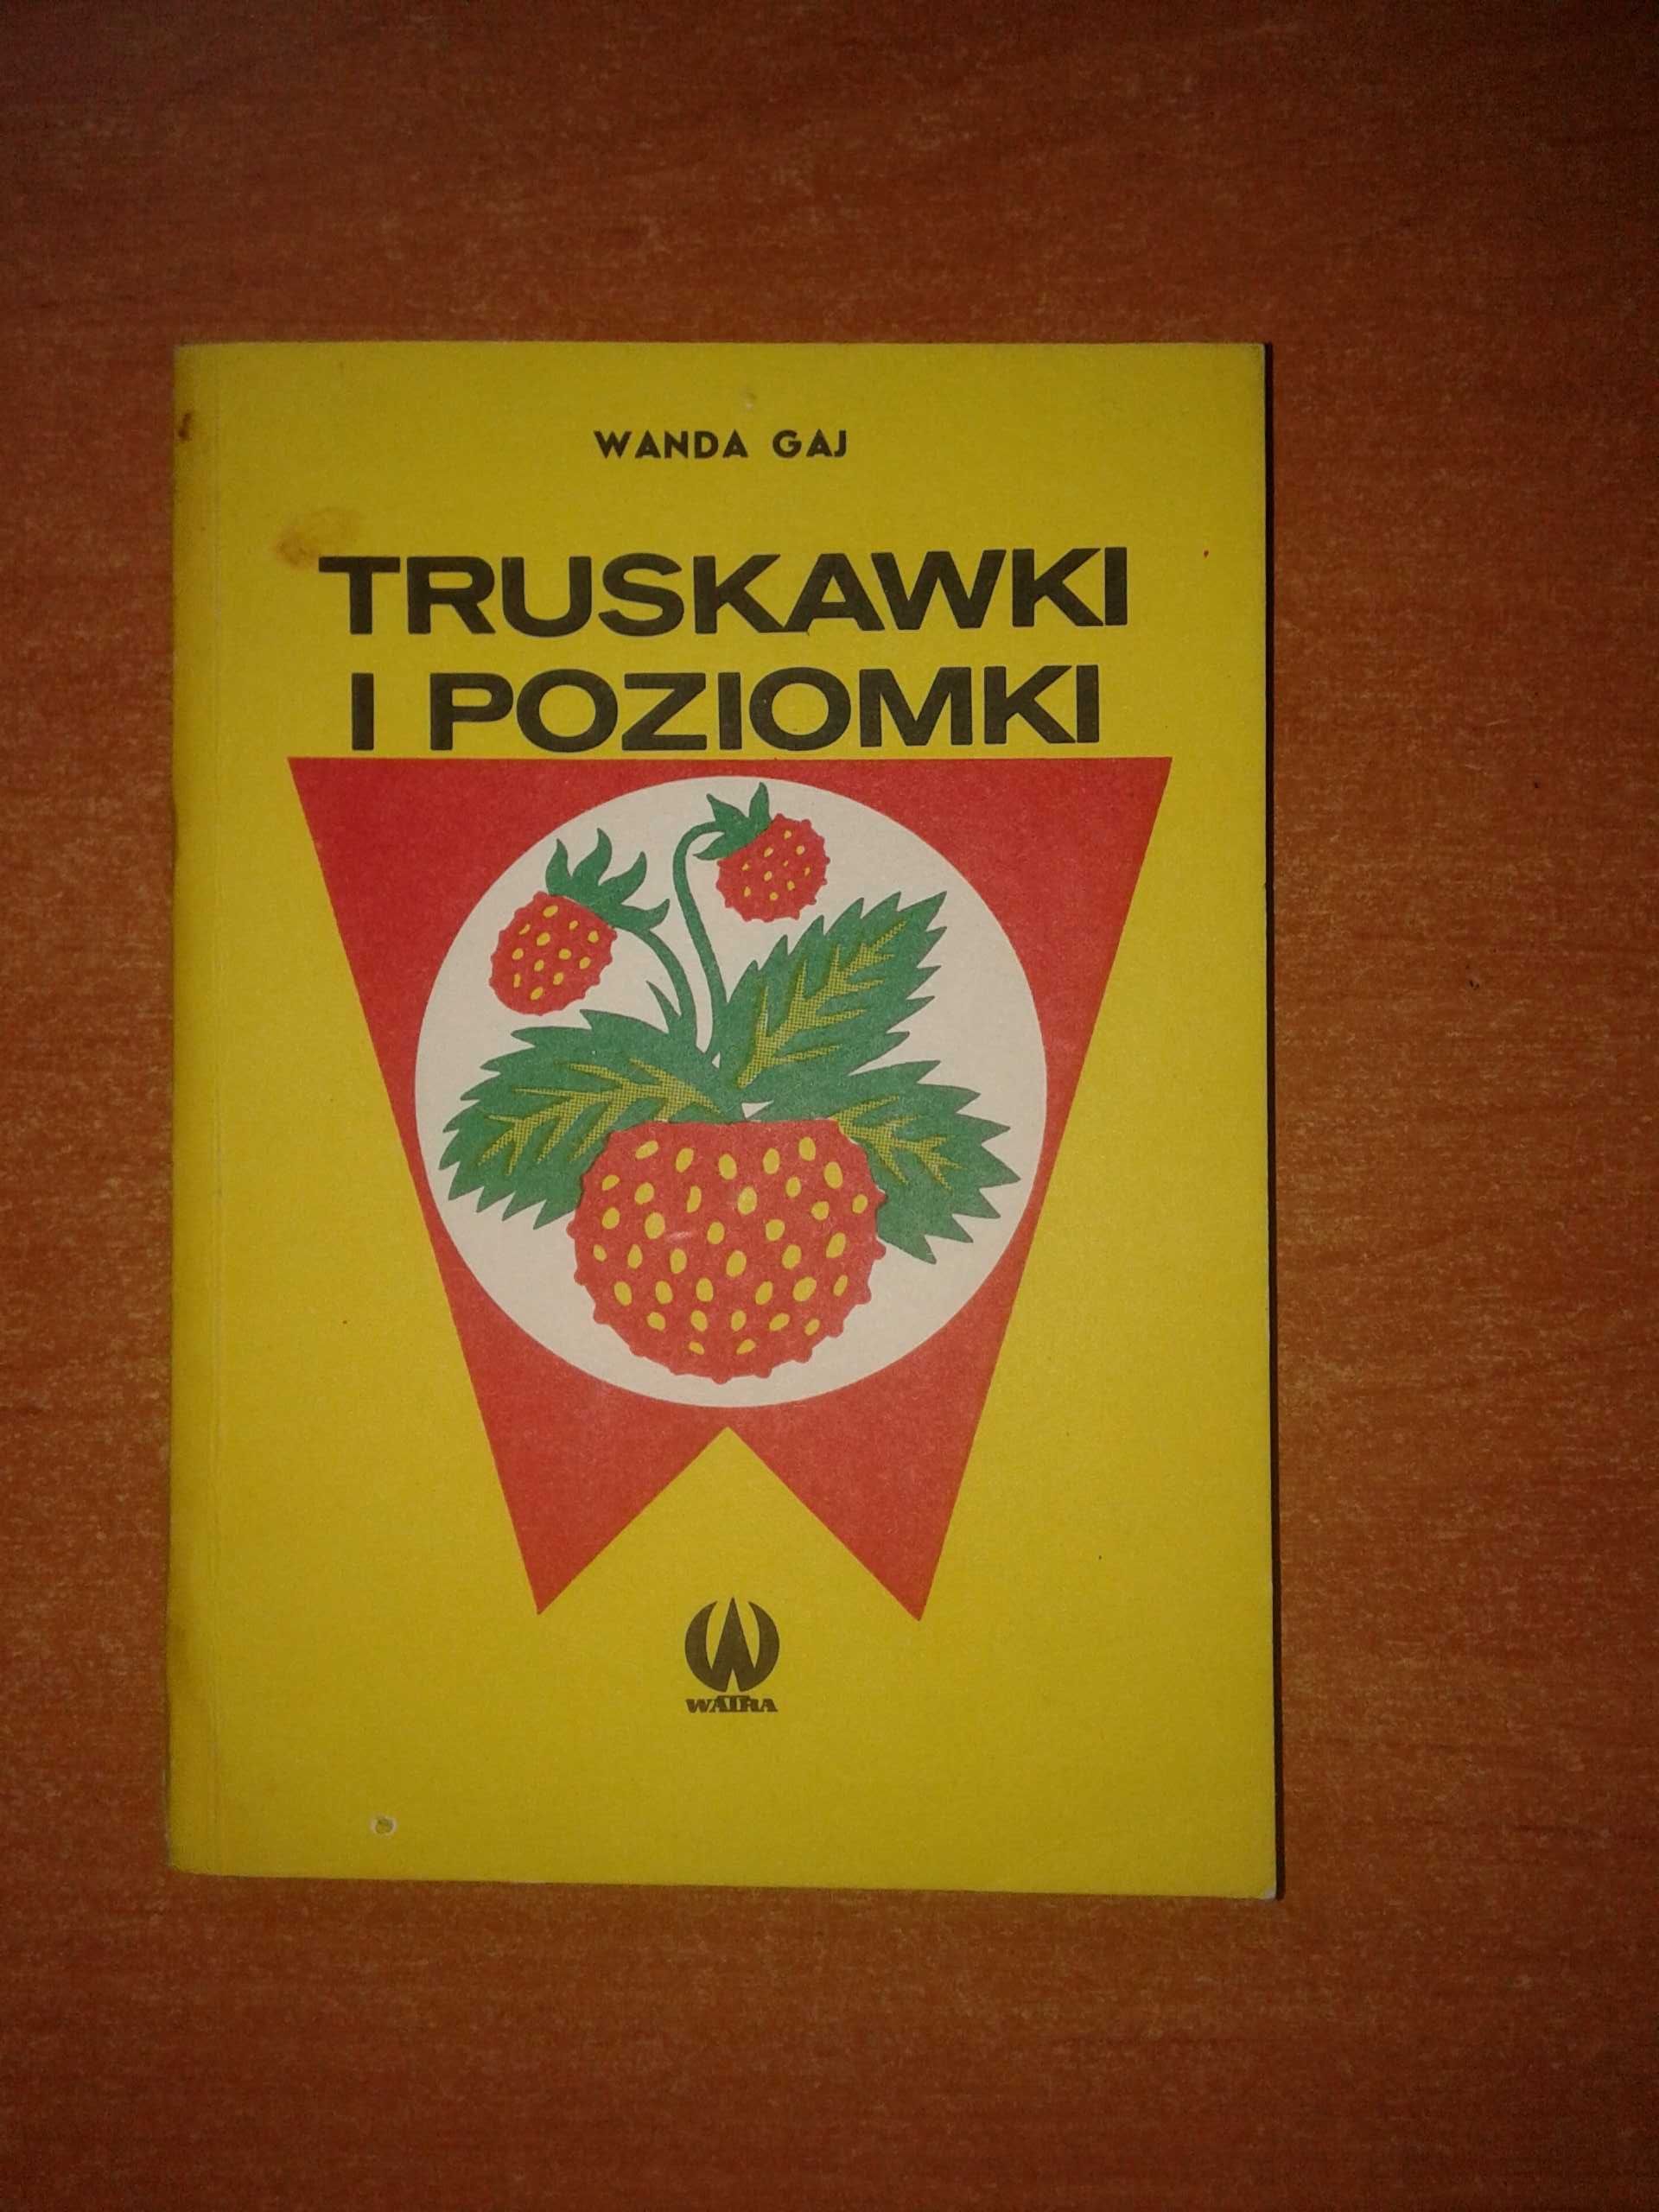 Truskawki i Poziomki - Wanda Gaj